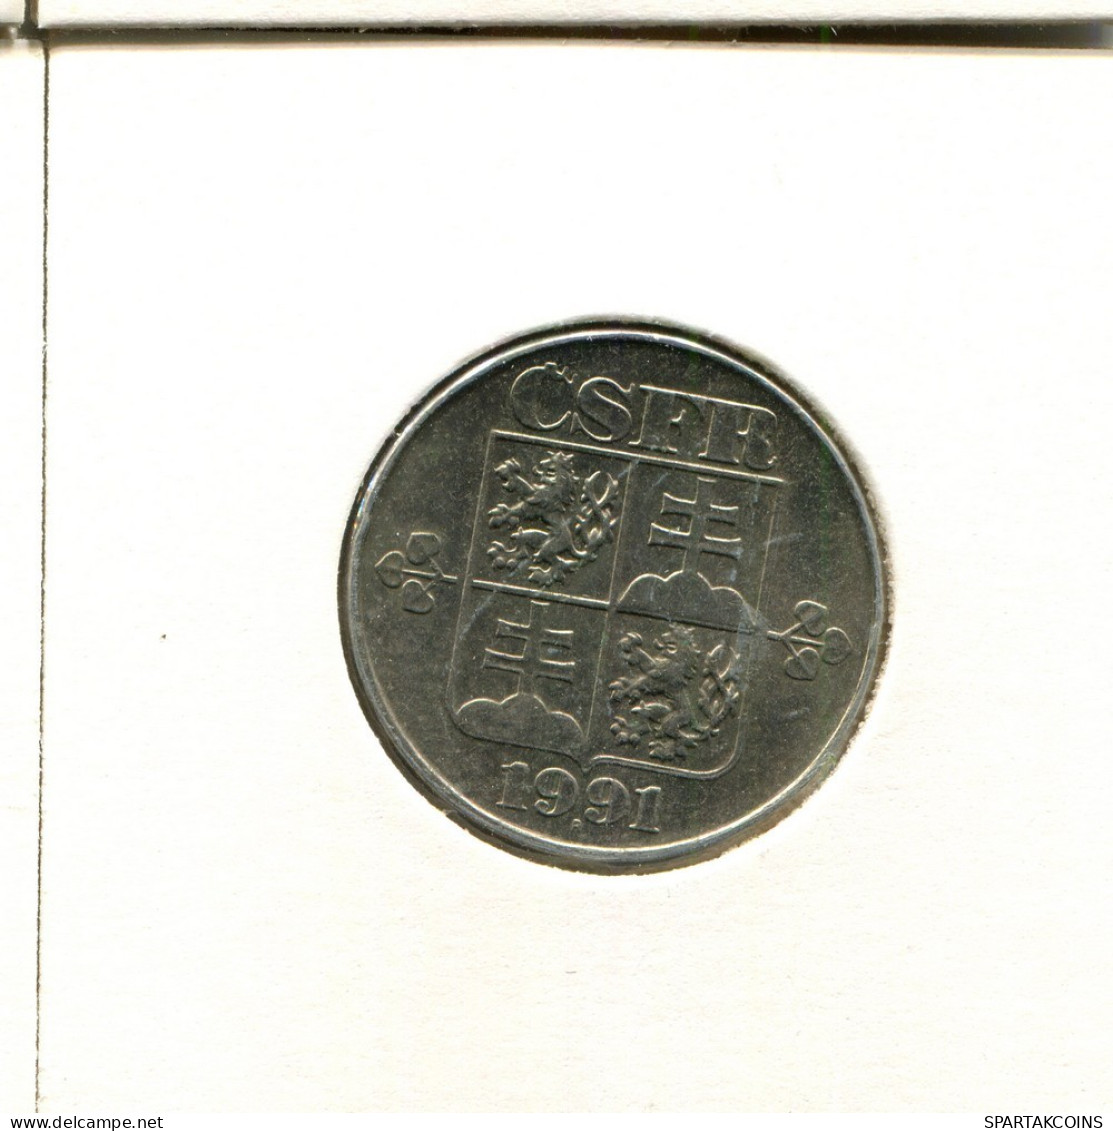 2 KORUN 1991 TSCHECHOSLOWAKEI CZECHOSLOWAKEI SLOVAKIA Münze #AZ959.D.A - Checoslovaquia